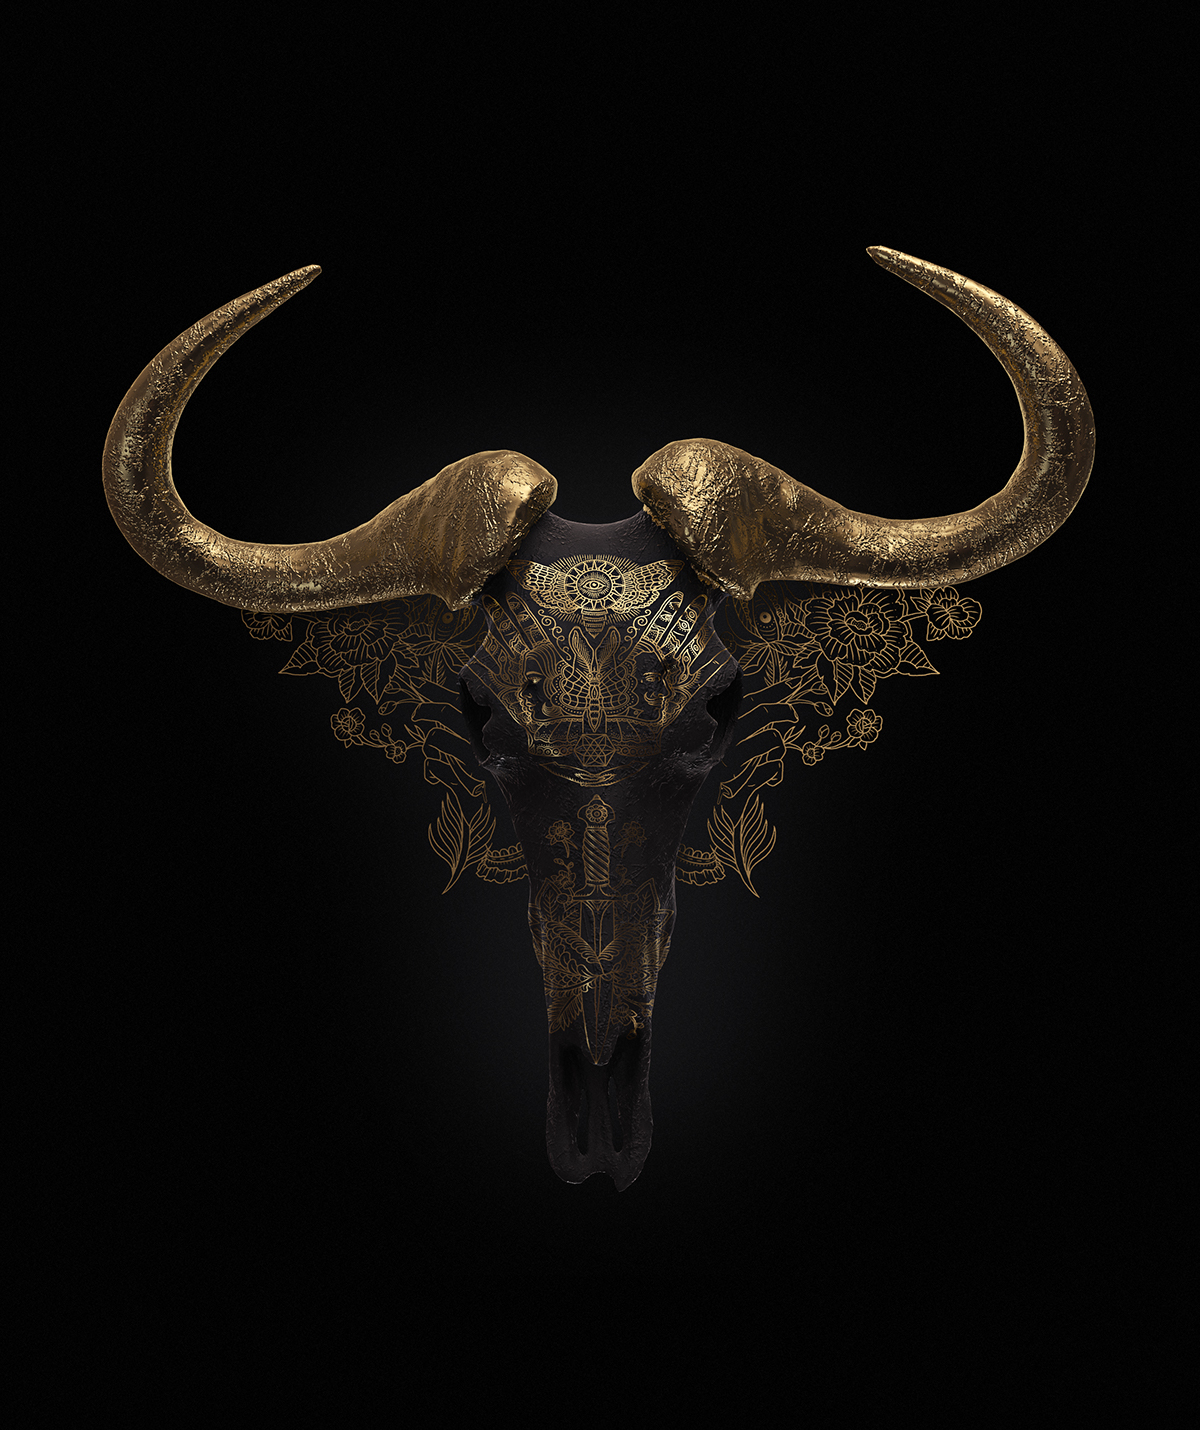 billelis tattoo skull MEGAMUNDEN rose 3D satin engrave gold pattern